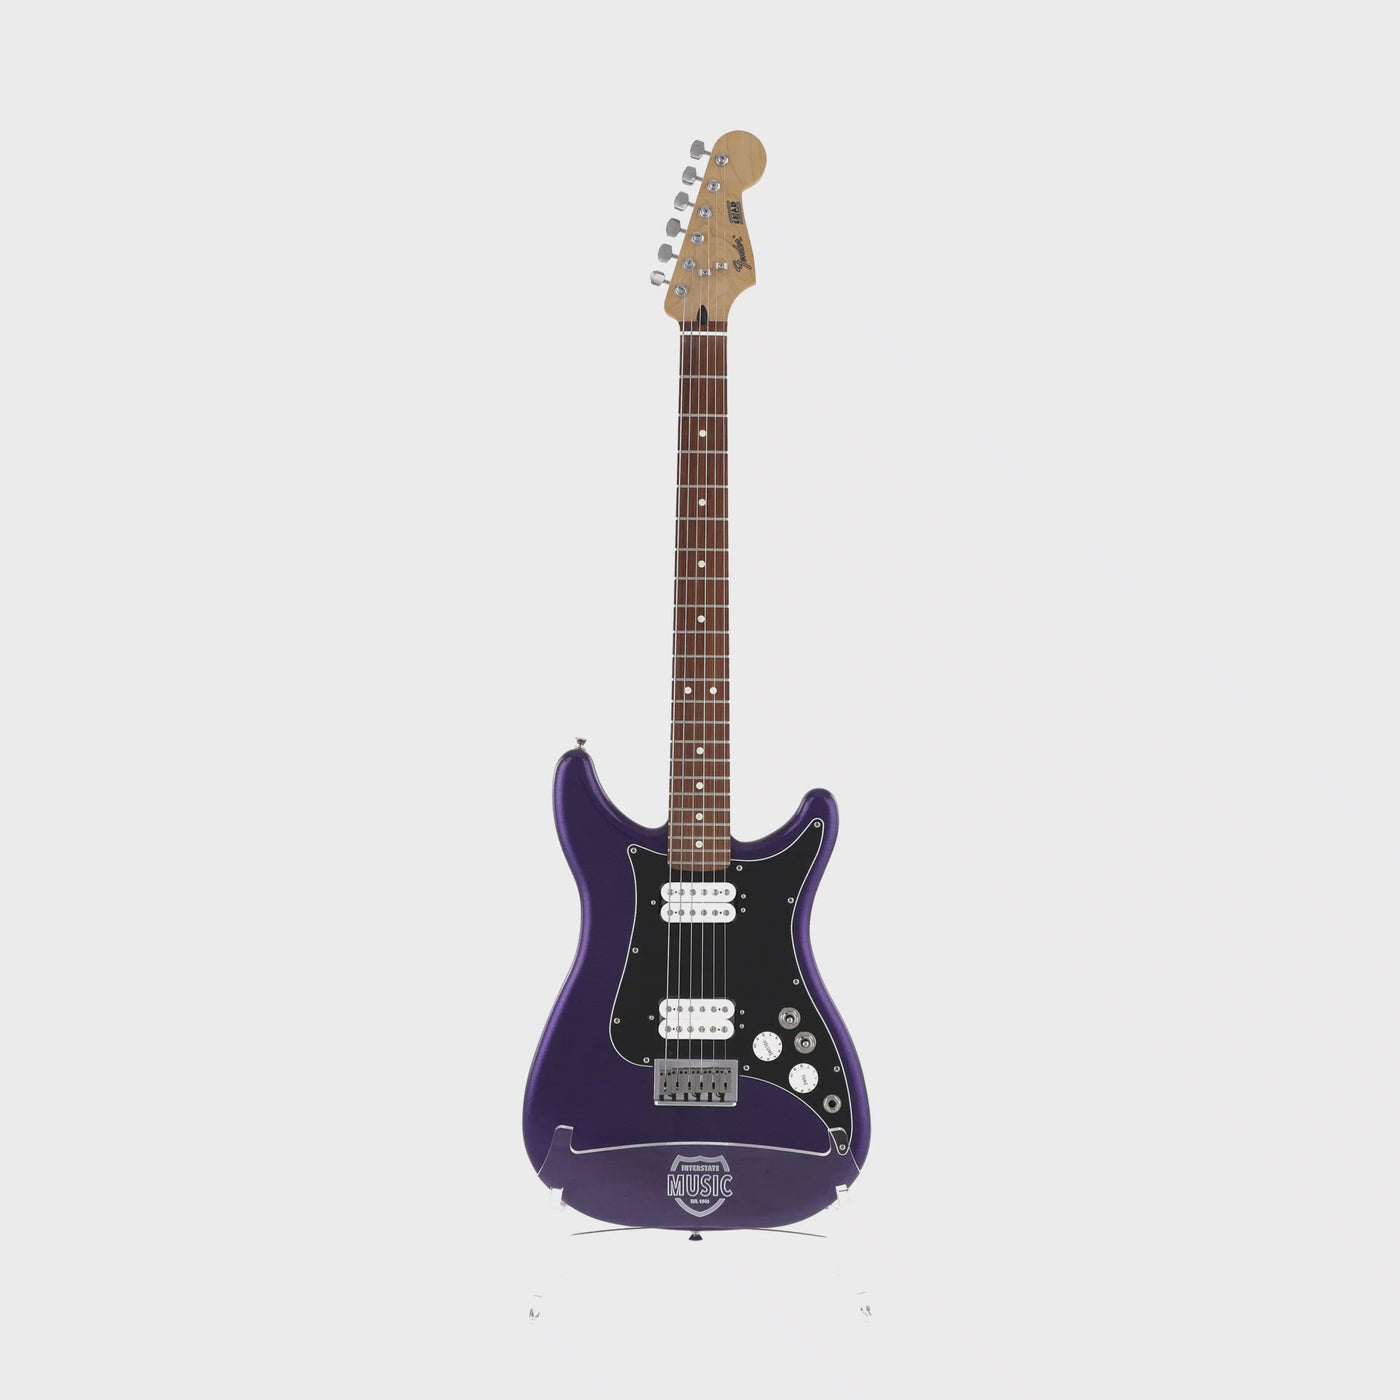 Fender Player Lead lll Purple Metallic with Pau Ferro